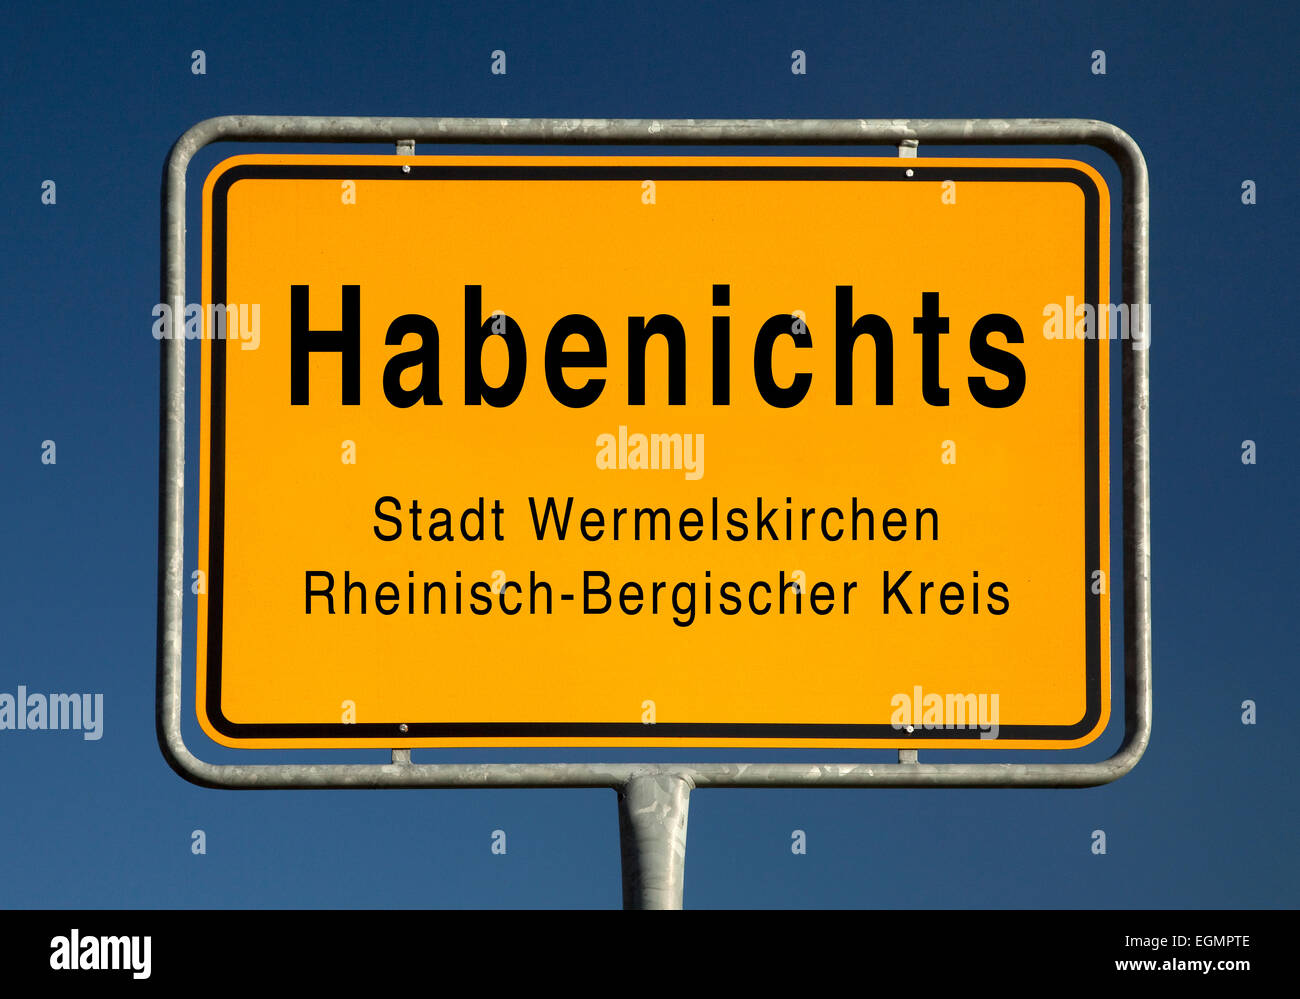 Stadt schränkt Zeichen der Habenichts, Teil von Wermelskirchen, Rheinisch-Bergischer Kreis, Nordrhein-Westfalen, Deutschland Stockfoto